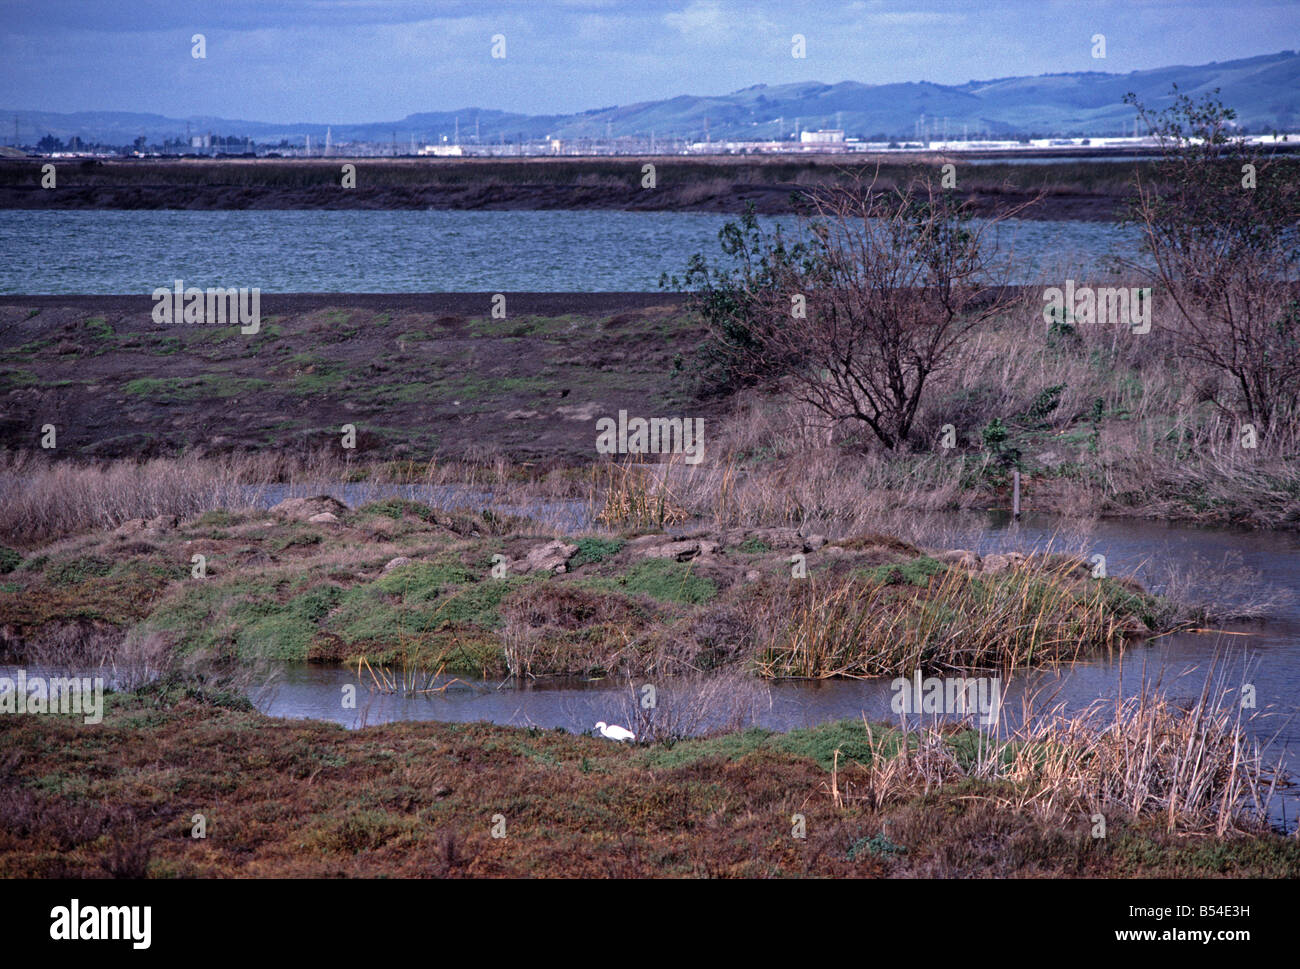 San Francisco Bay National Wildlife Refuge Alviso California largest US urban refuge Stock Photo